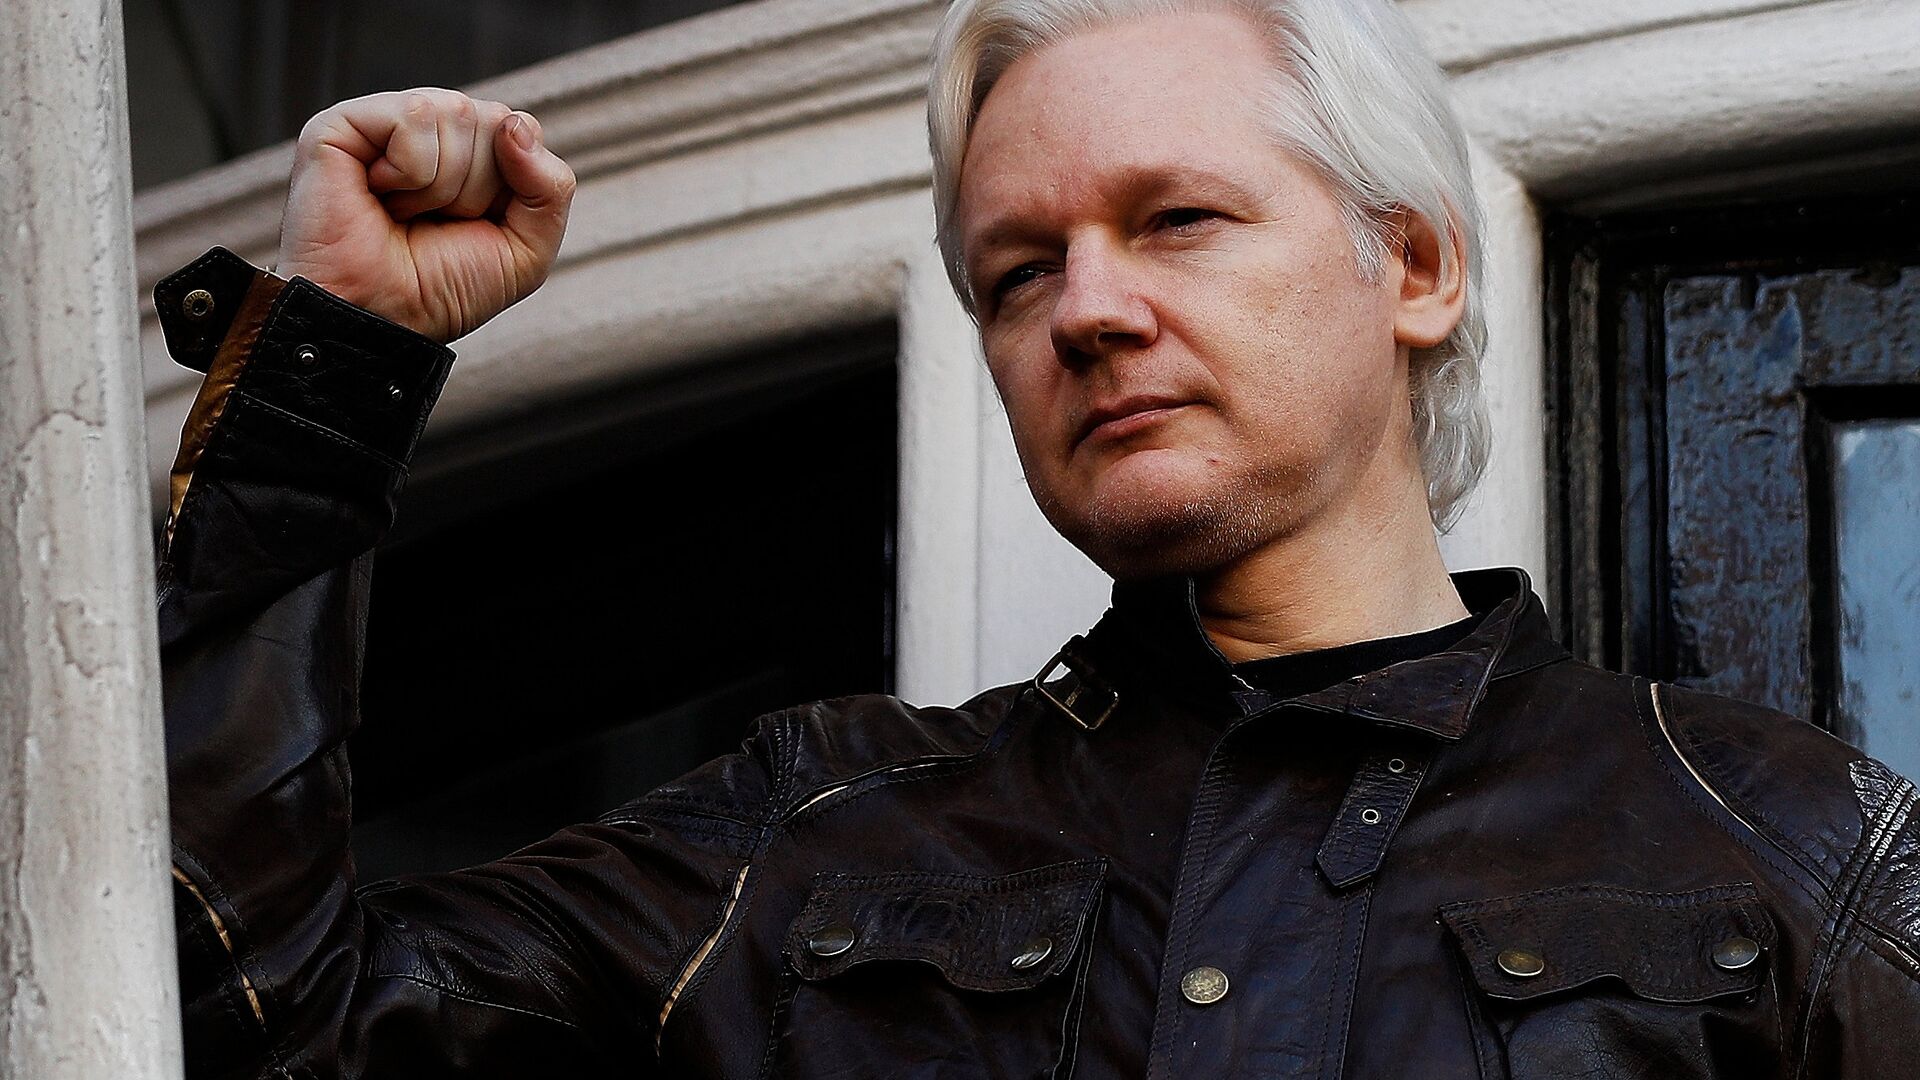 WikiLeaks founder Julian Assange is seen on the balcony of the Ecuadorian Embassy in London, Britain, May 19, 2017 - Sputnik International, 1920, 29.06.2021